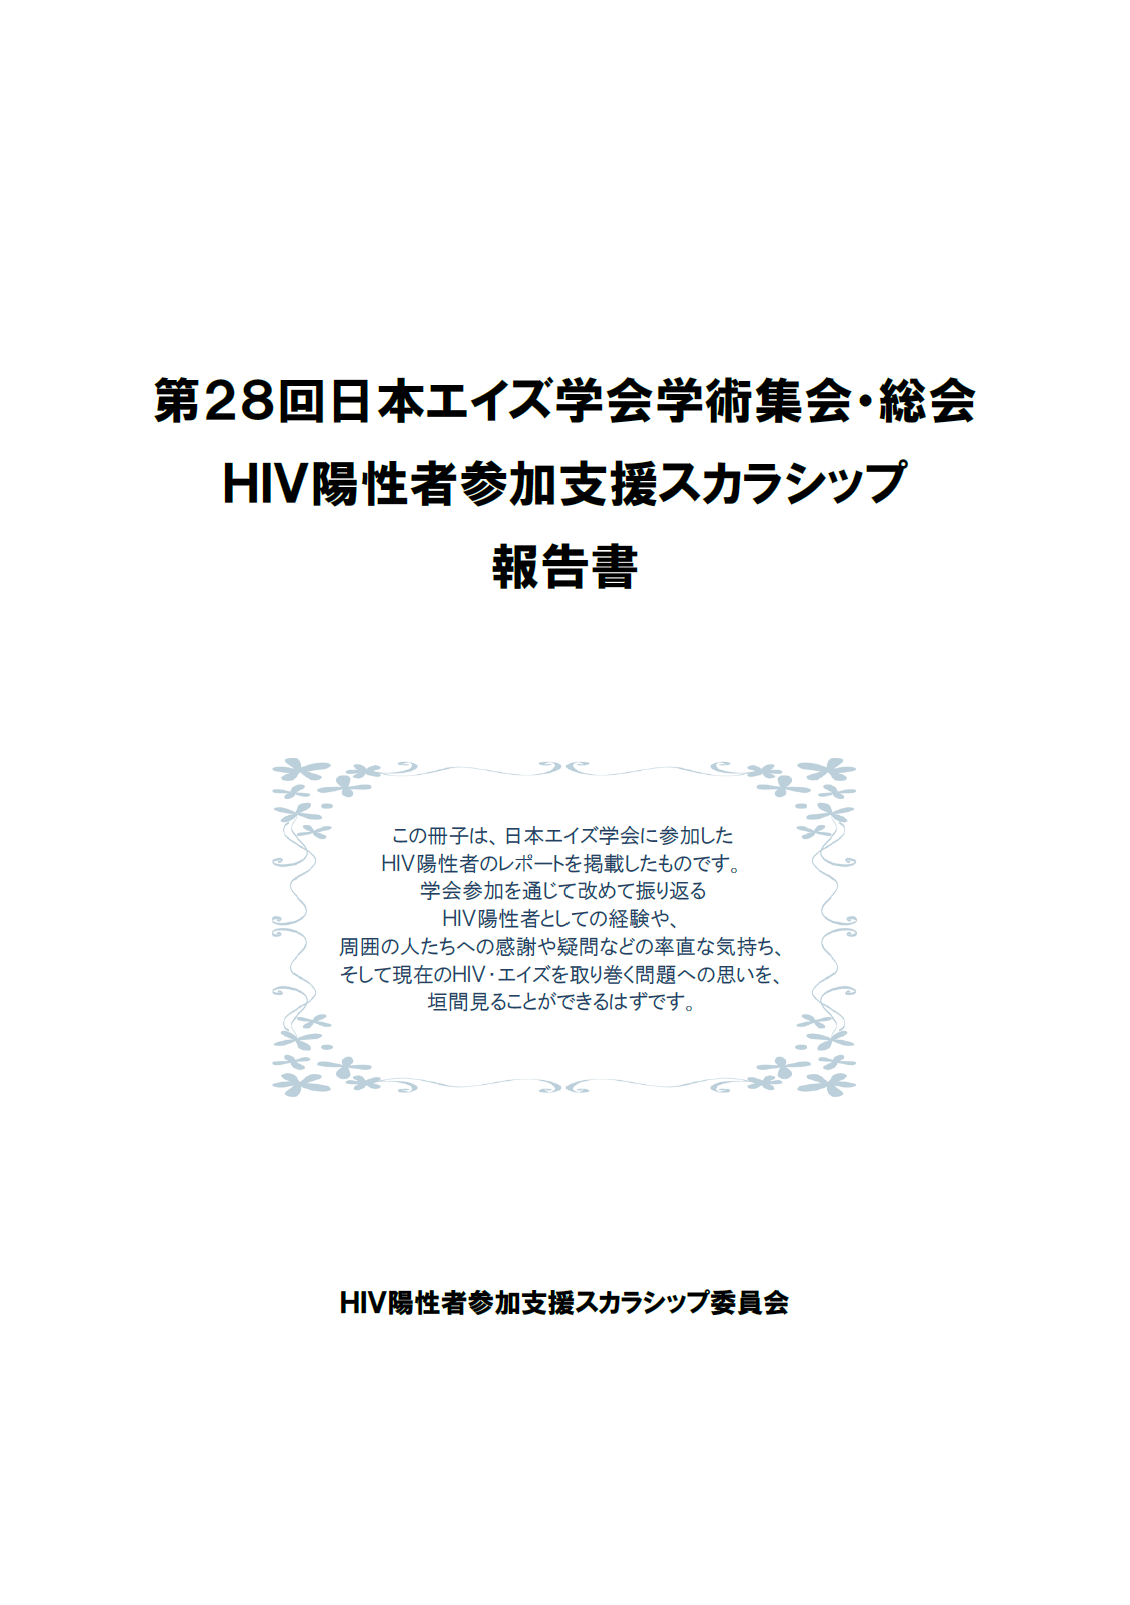 第28回日本エイズ学会総会・学術集会 HIV陽性者参加支援スカラシップ 報告書